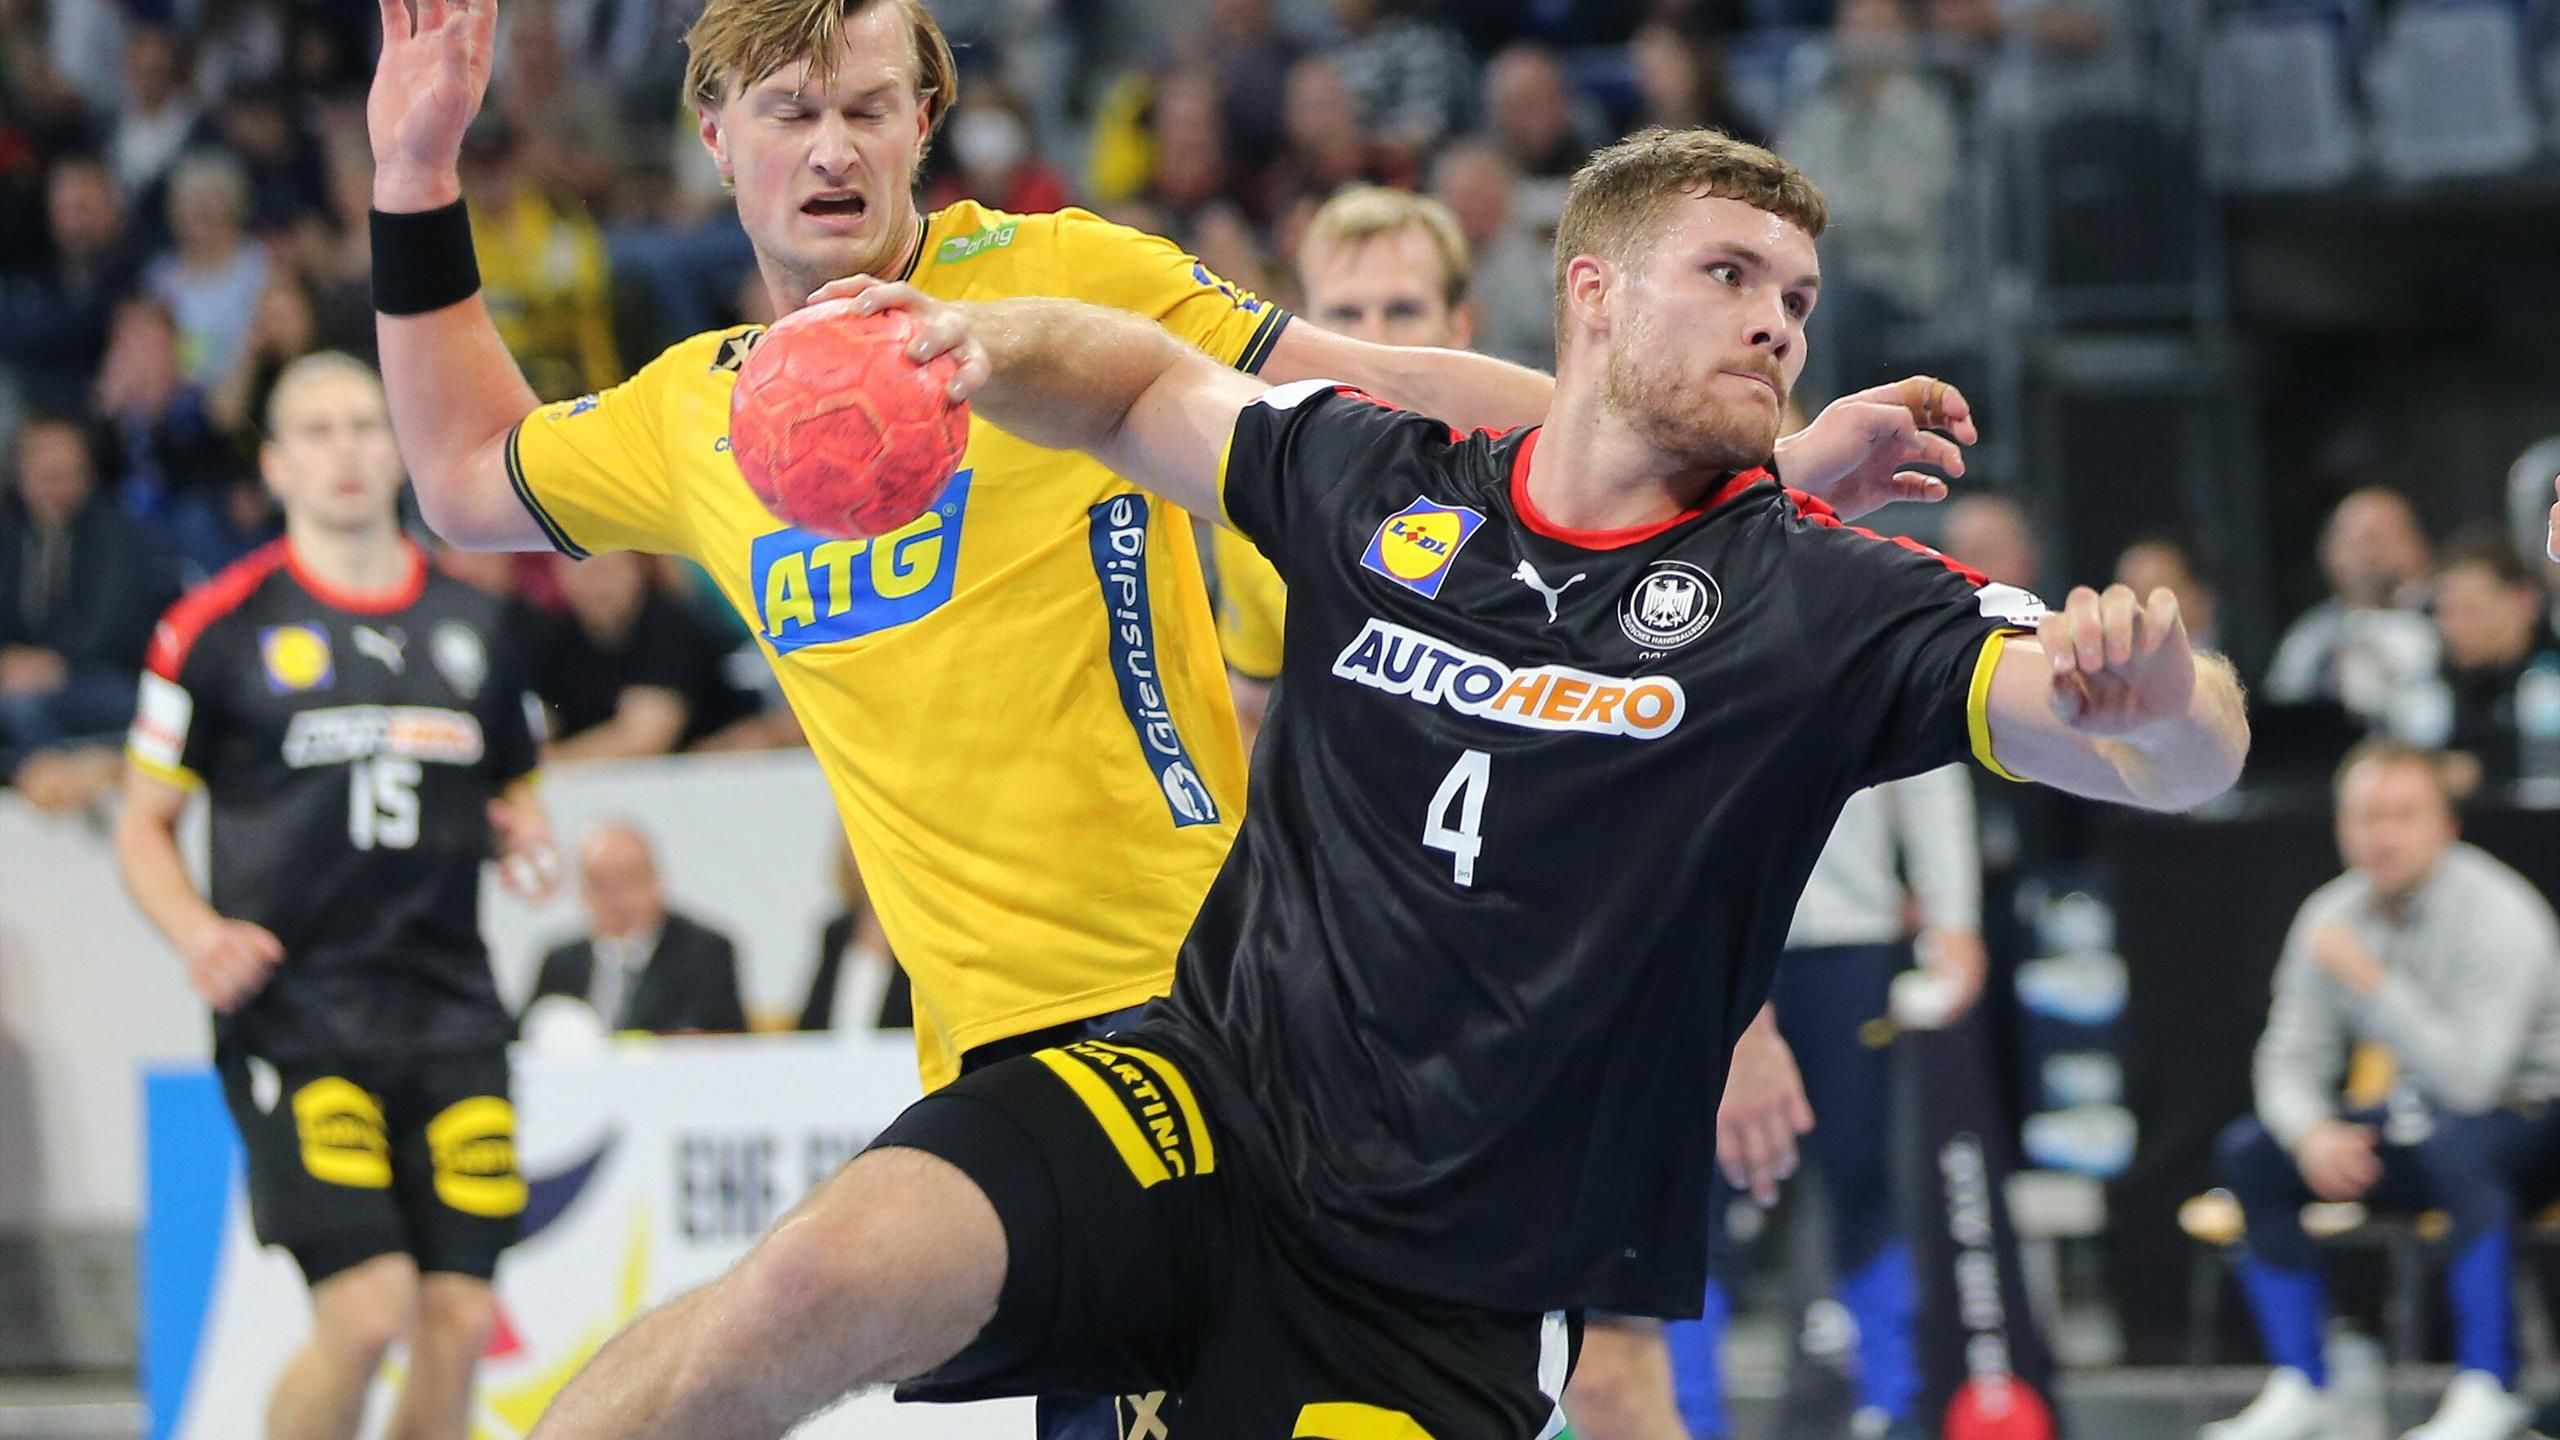 Deutsche Handballer verlieren Härtetest gegen Schweden in Mannheim DHB-Team verspielt guten Start